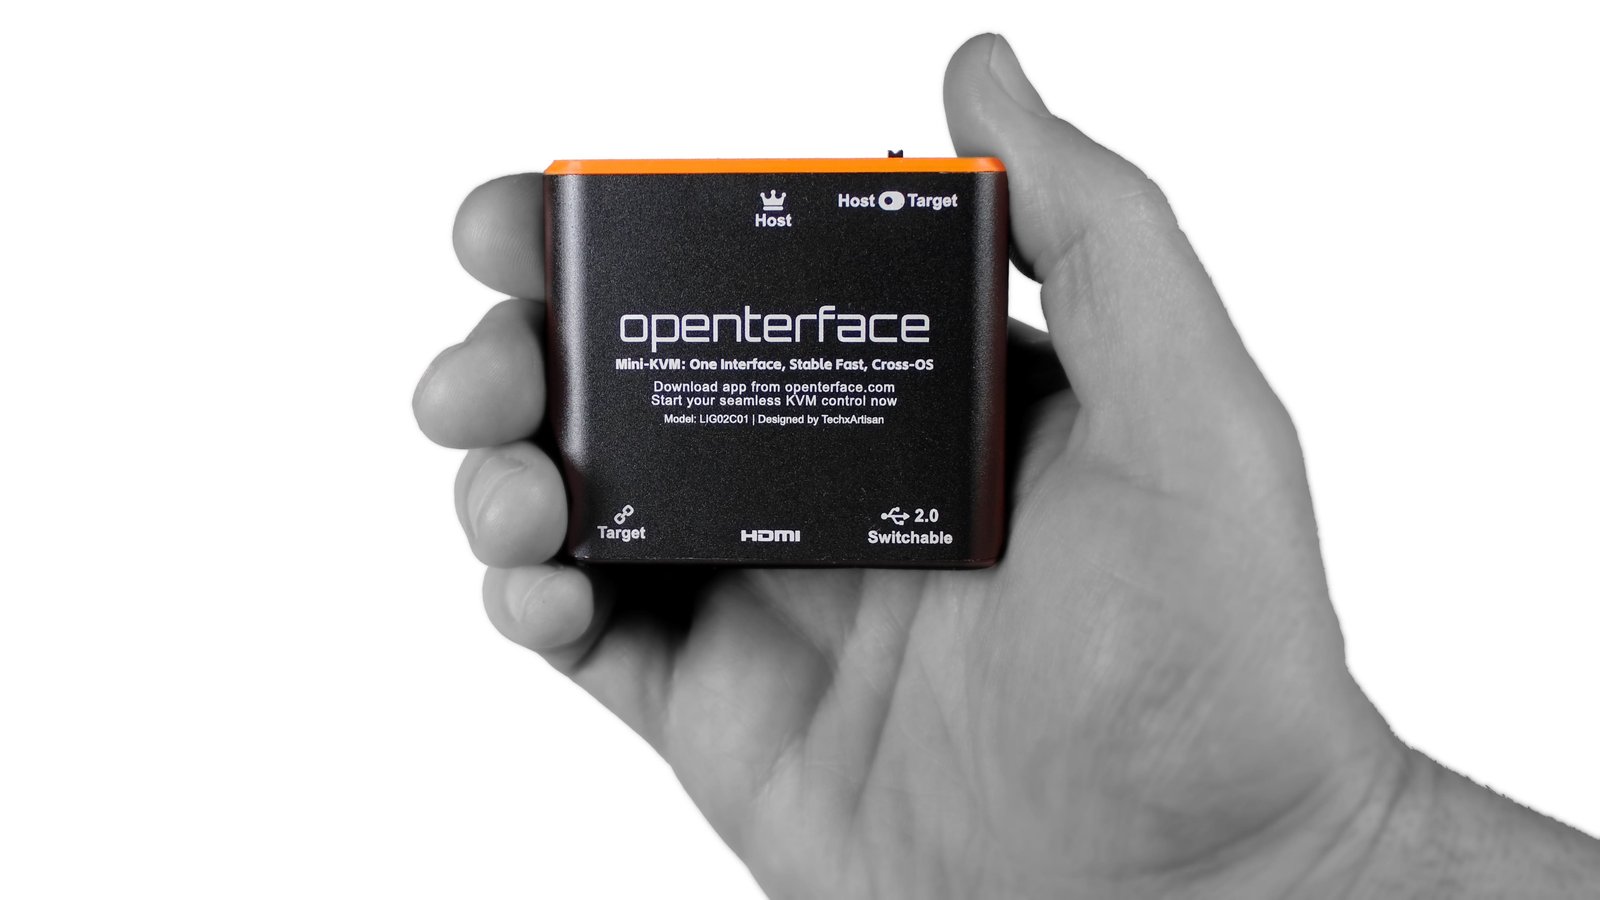 Openterface Mini-KVM